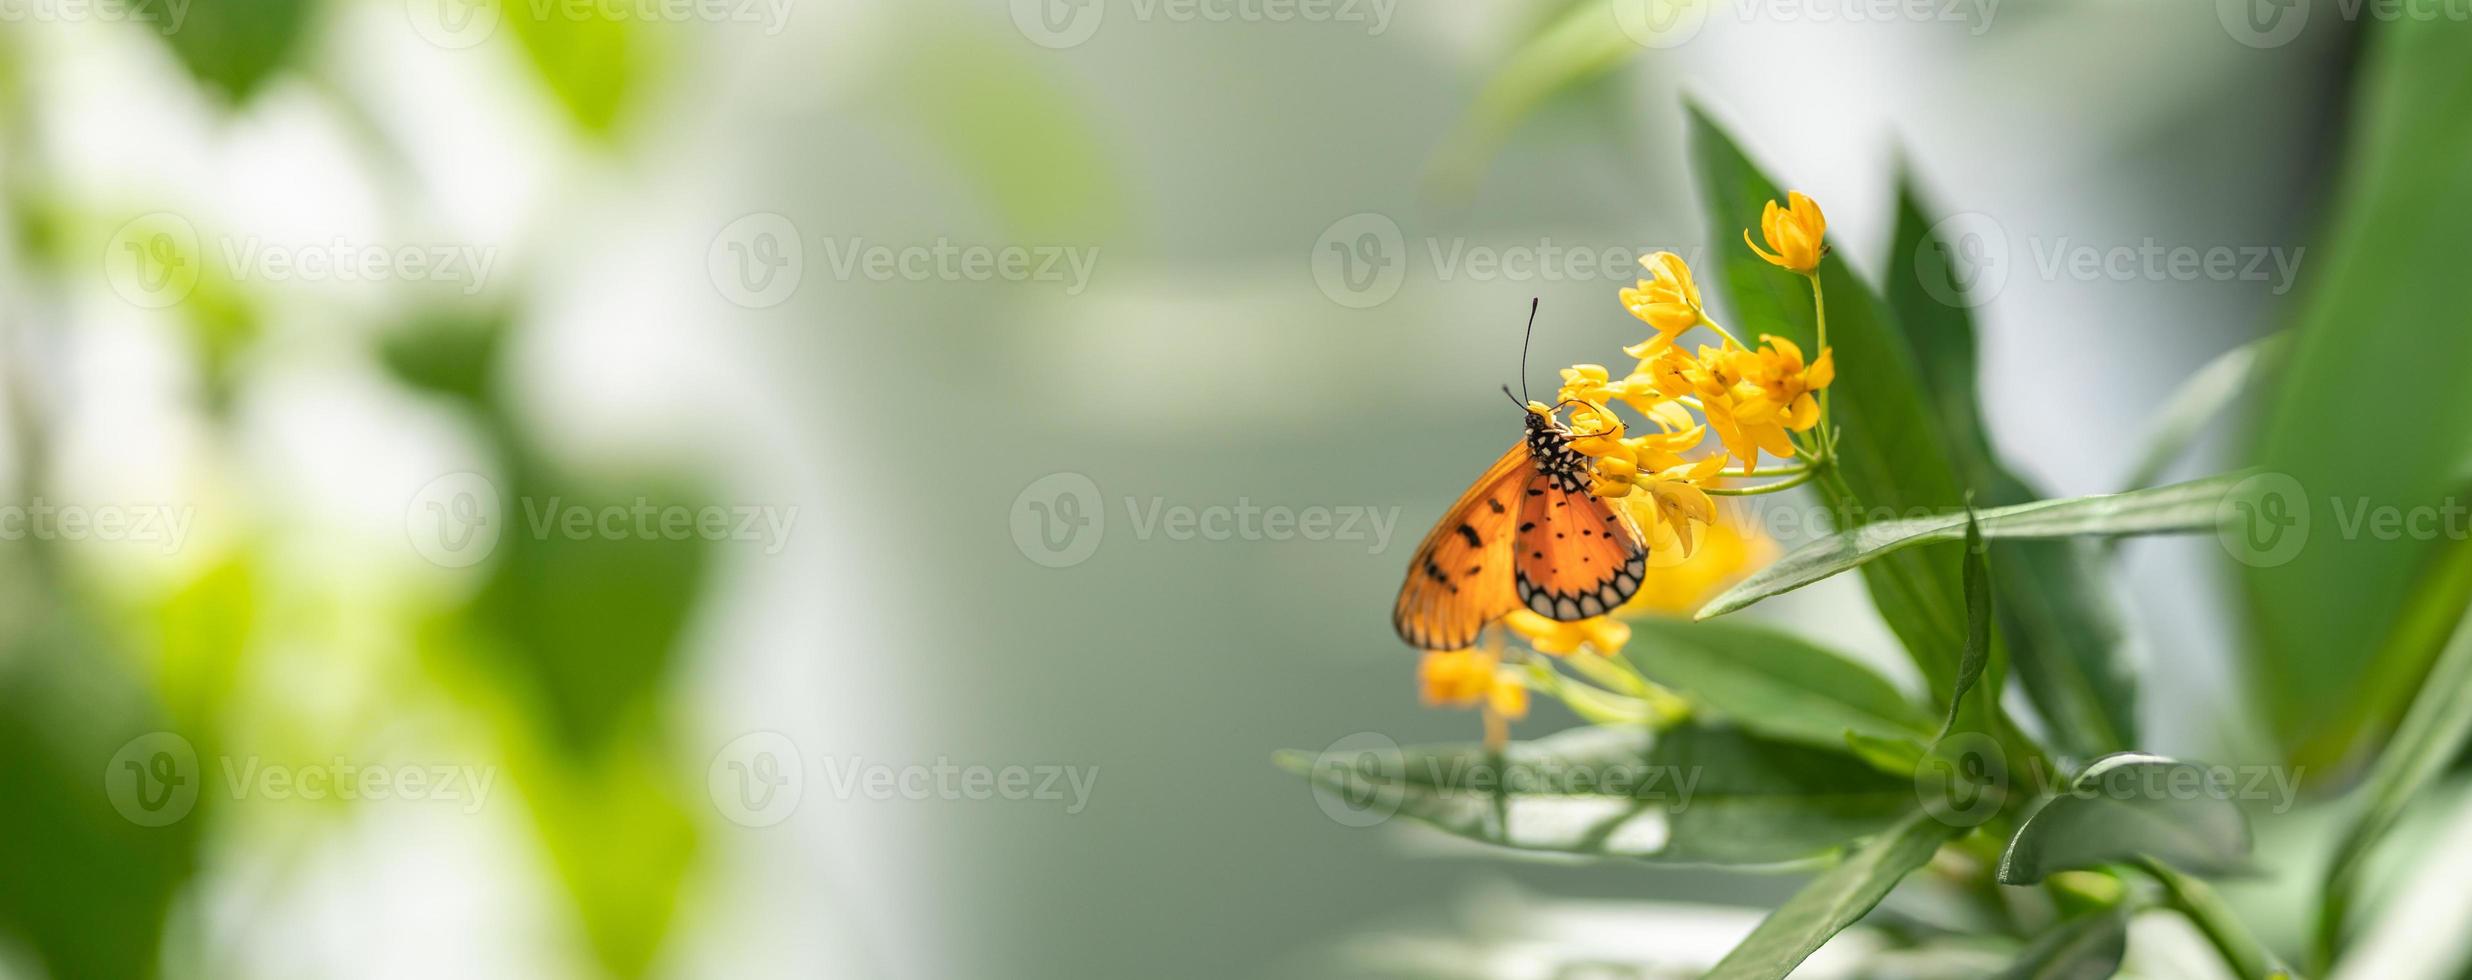 Schöner orangefarbener Schmetterling auf gelber Blume mit grünem Blatt Natur verschwommener Hintergrund im Garten mit Kopierraum als Hintergrundinsekt, Naturlandschaft, Ökologie, frisches Deckblattkonzept. foto